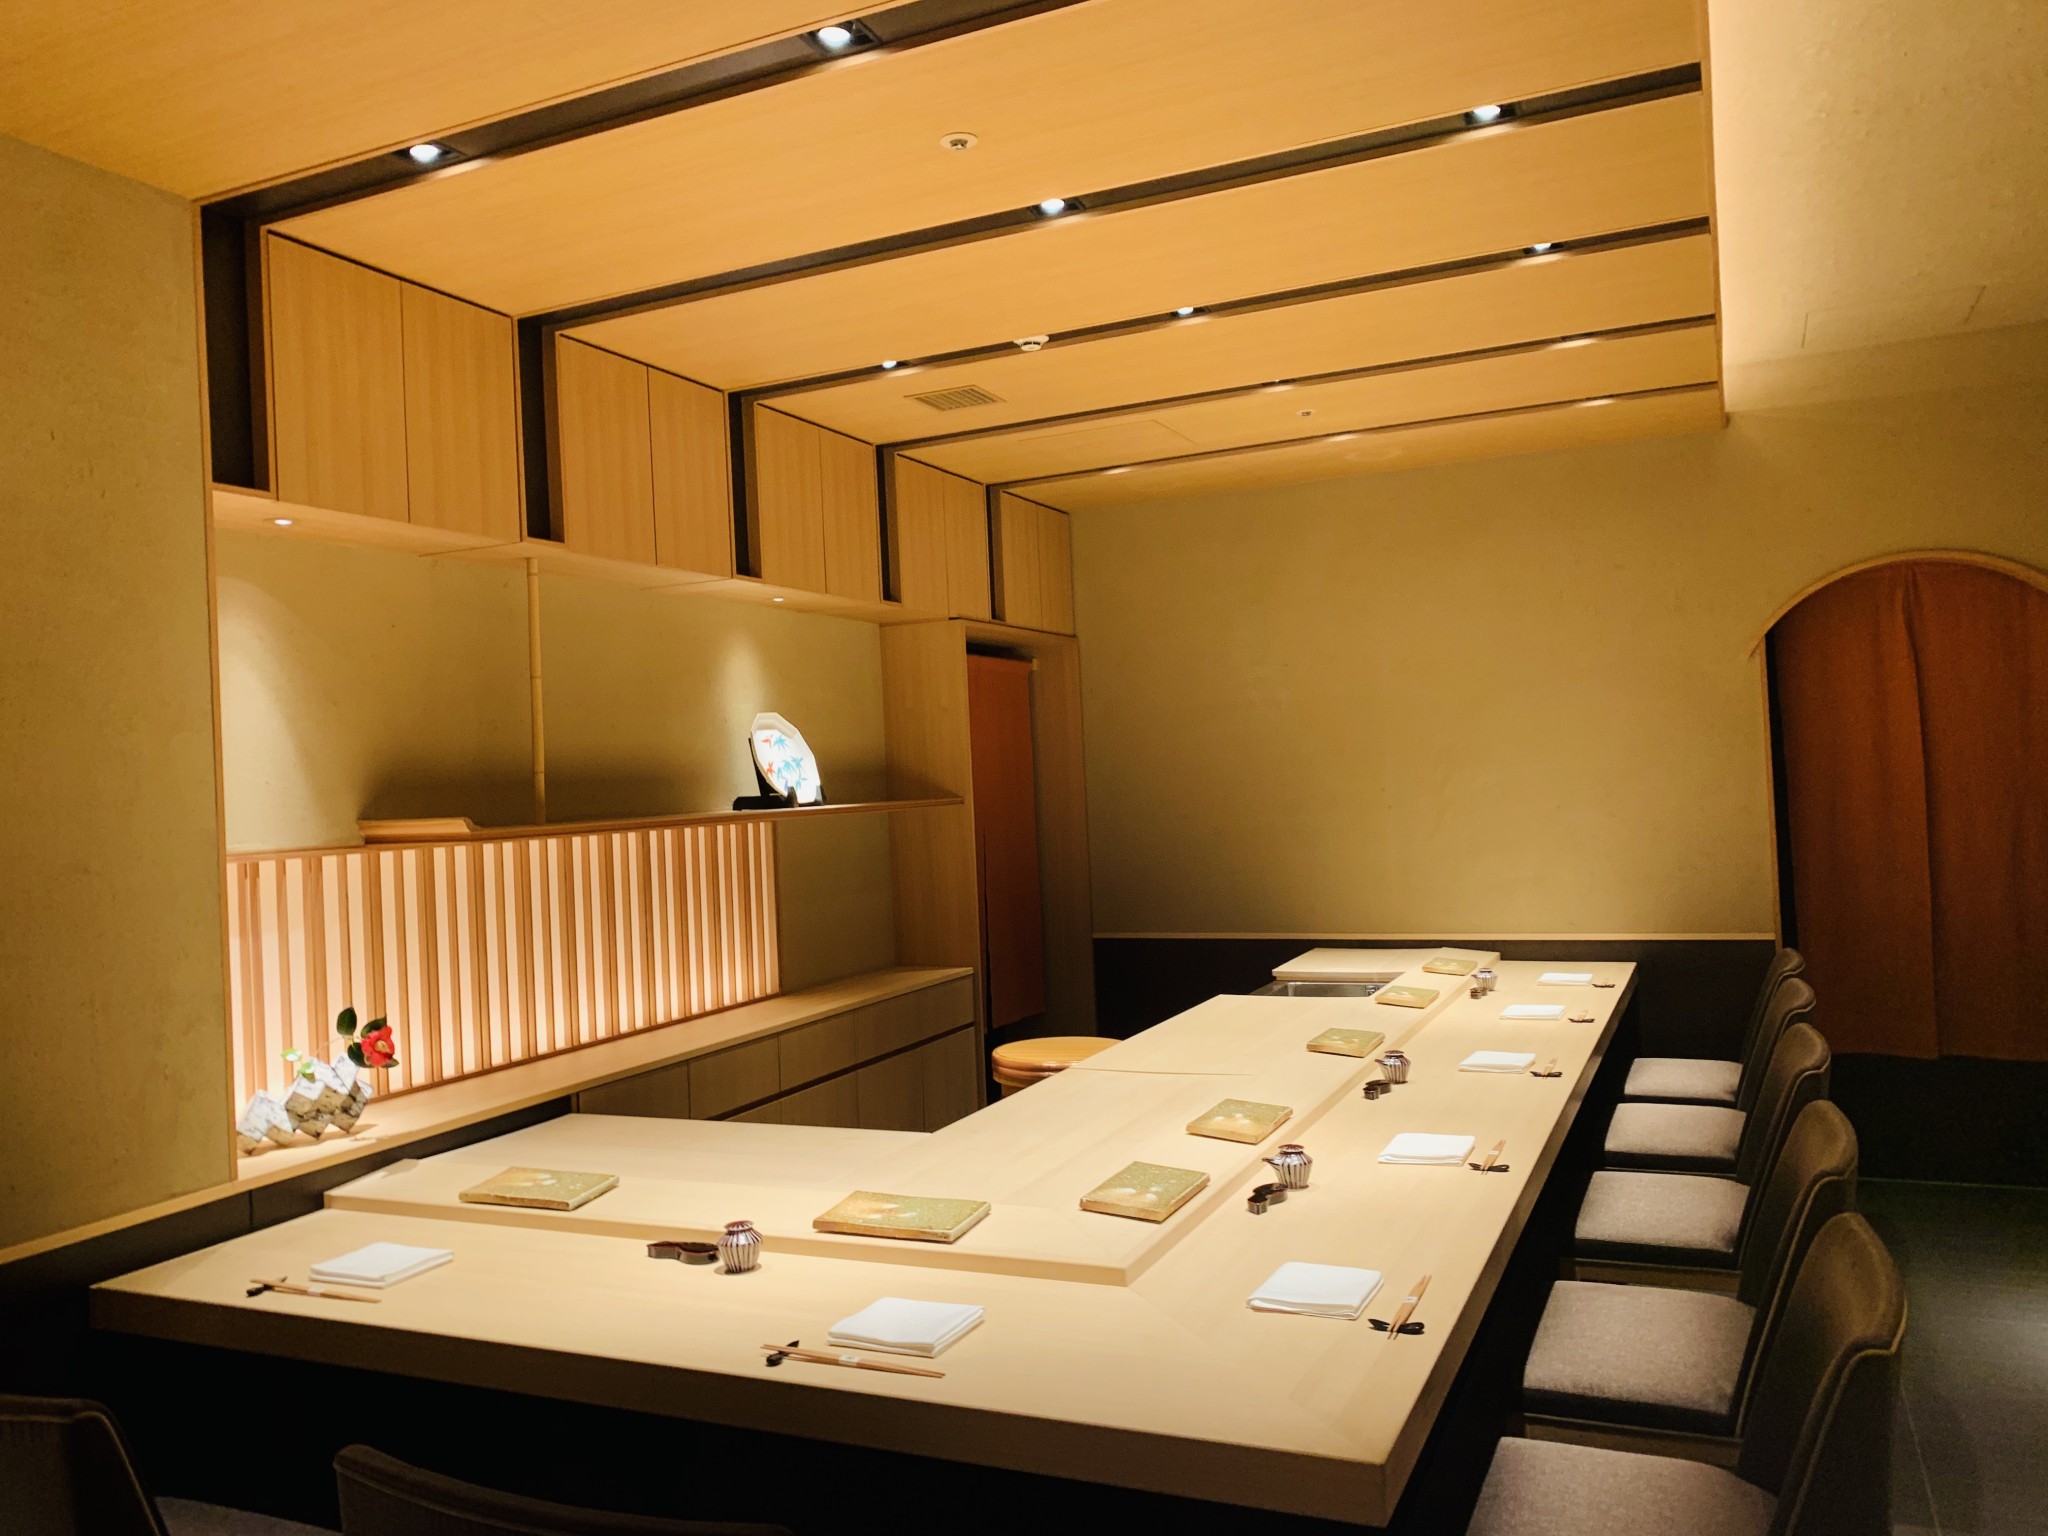 日本料理店〈日本料理 八千代〉の寿司カウンター。